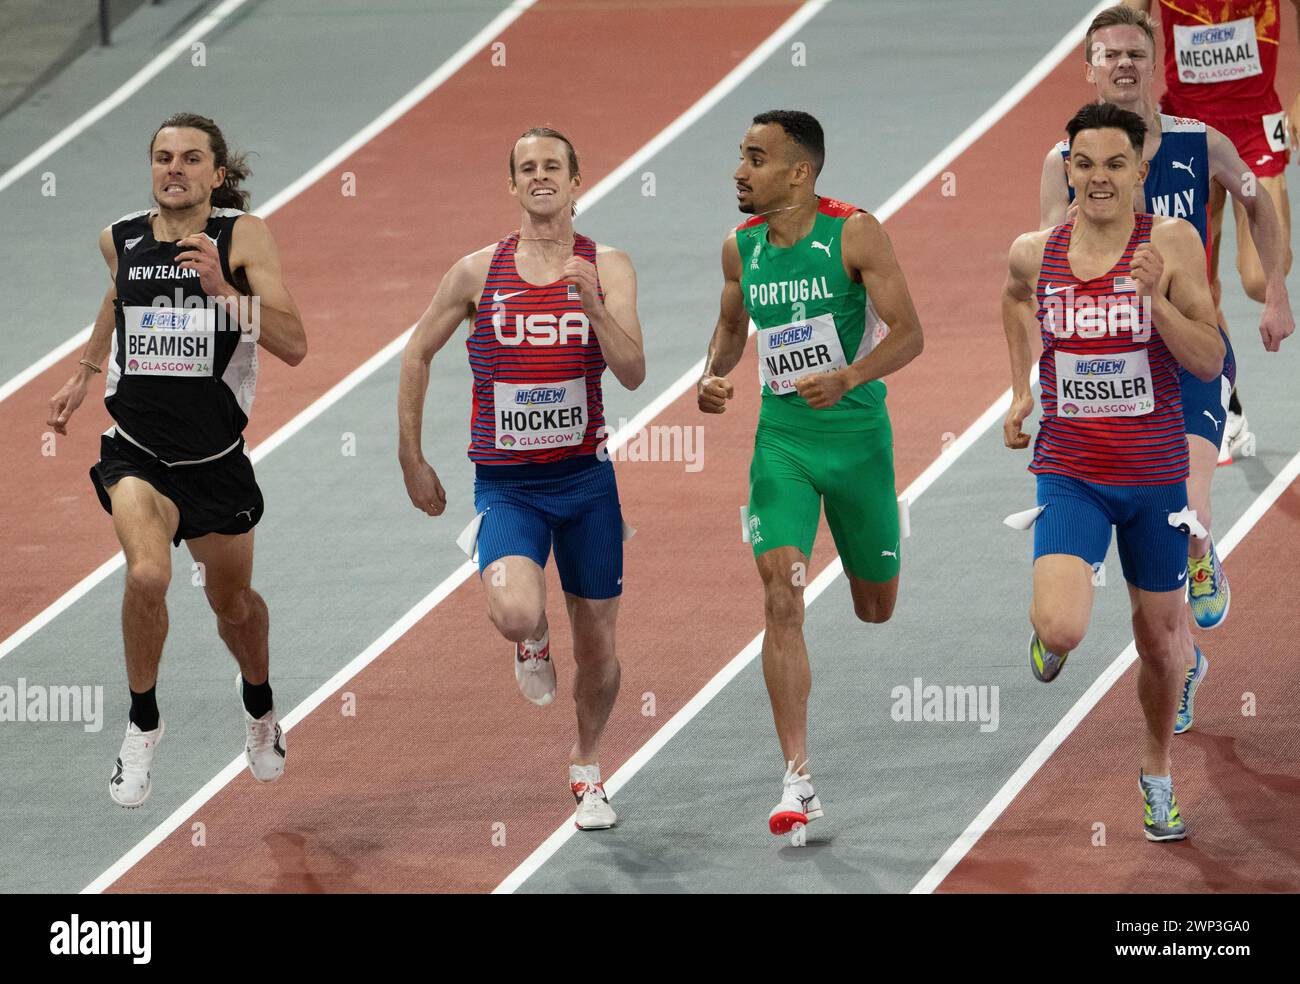 Geordie Beamish della nuova Zelanda supera Cole Hocker (USA), Isaac Nader (Portogallo) e Hobbs Kessler (USA) per vincere la finale maschile di 1500 m al mondo Foto Stock